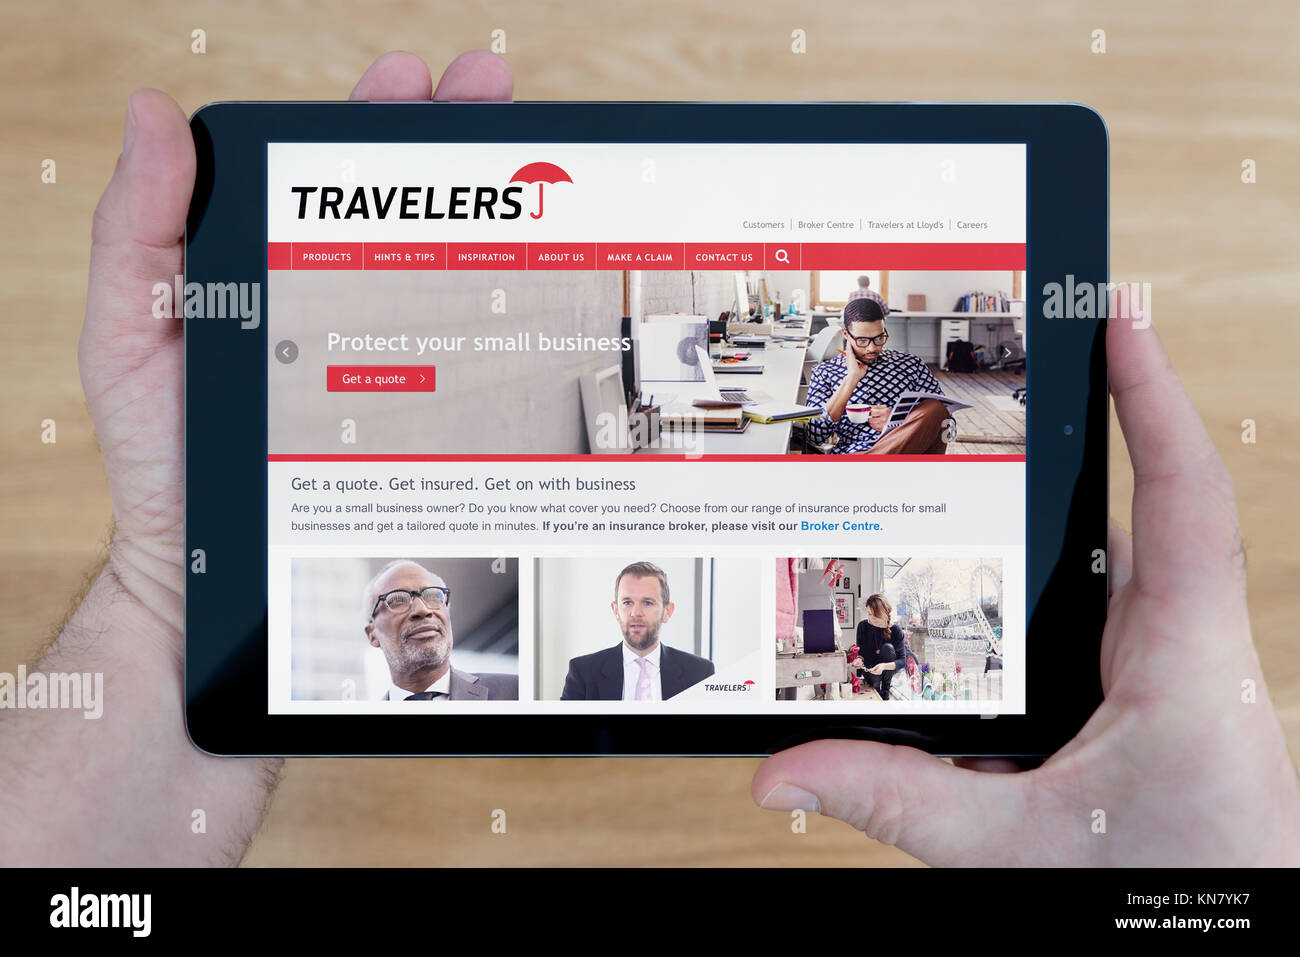 Un homme regarde les voyageurs site sur son iPad tablet device, tourné contre une table en bois page contexte (usage éditorial uniquement) Banque D'Images